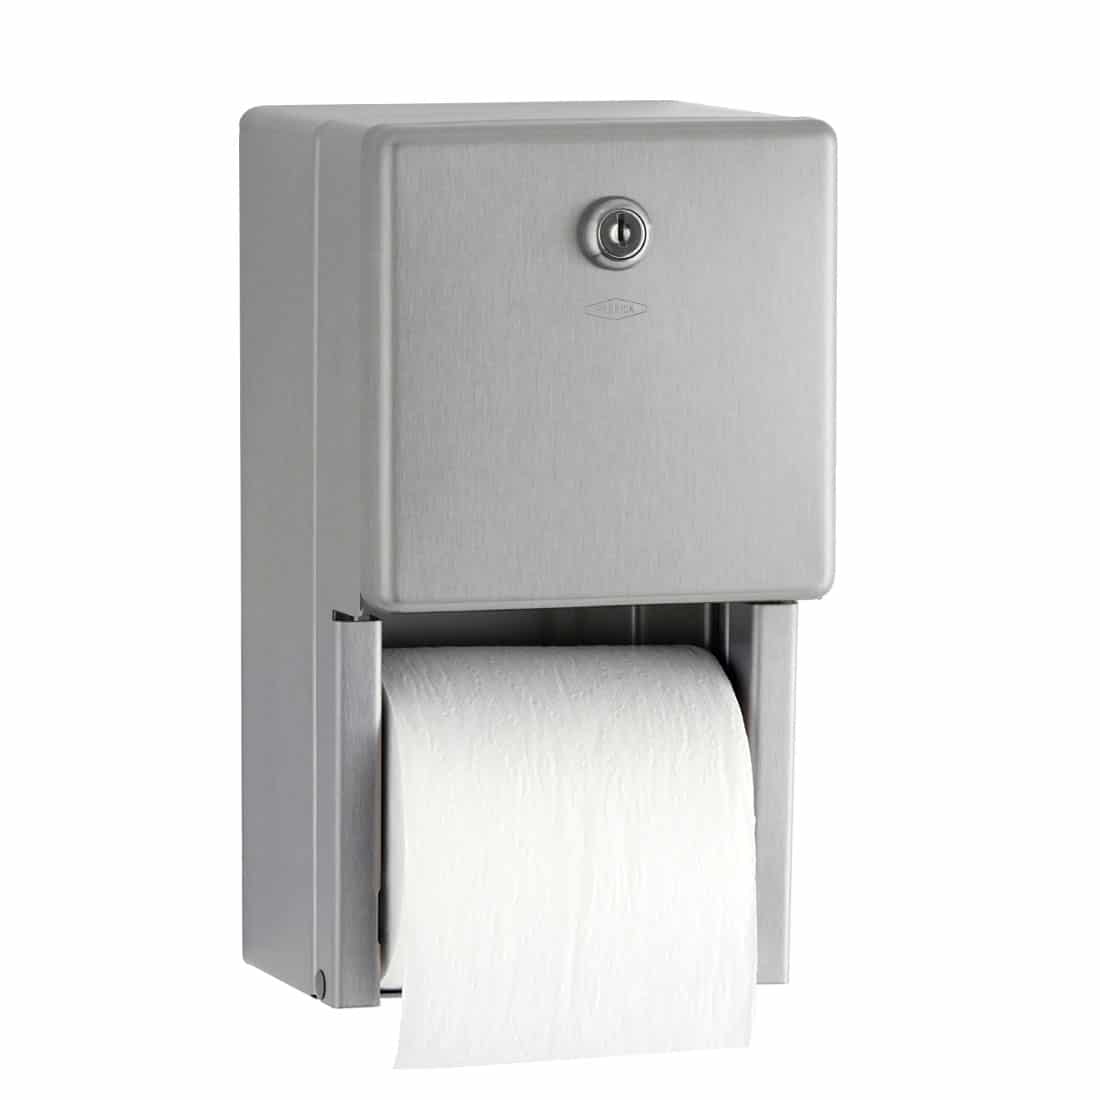 Bobrick Classic B-2888 Multi-Roll Toilet Tissue Dispenser for sale online 